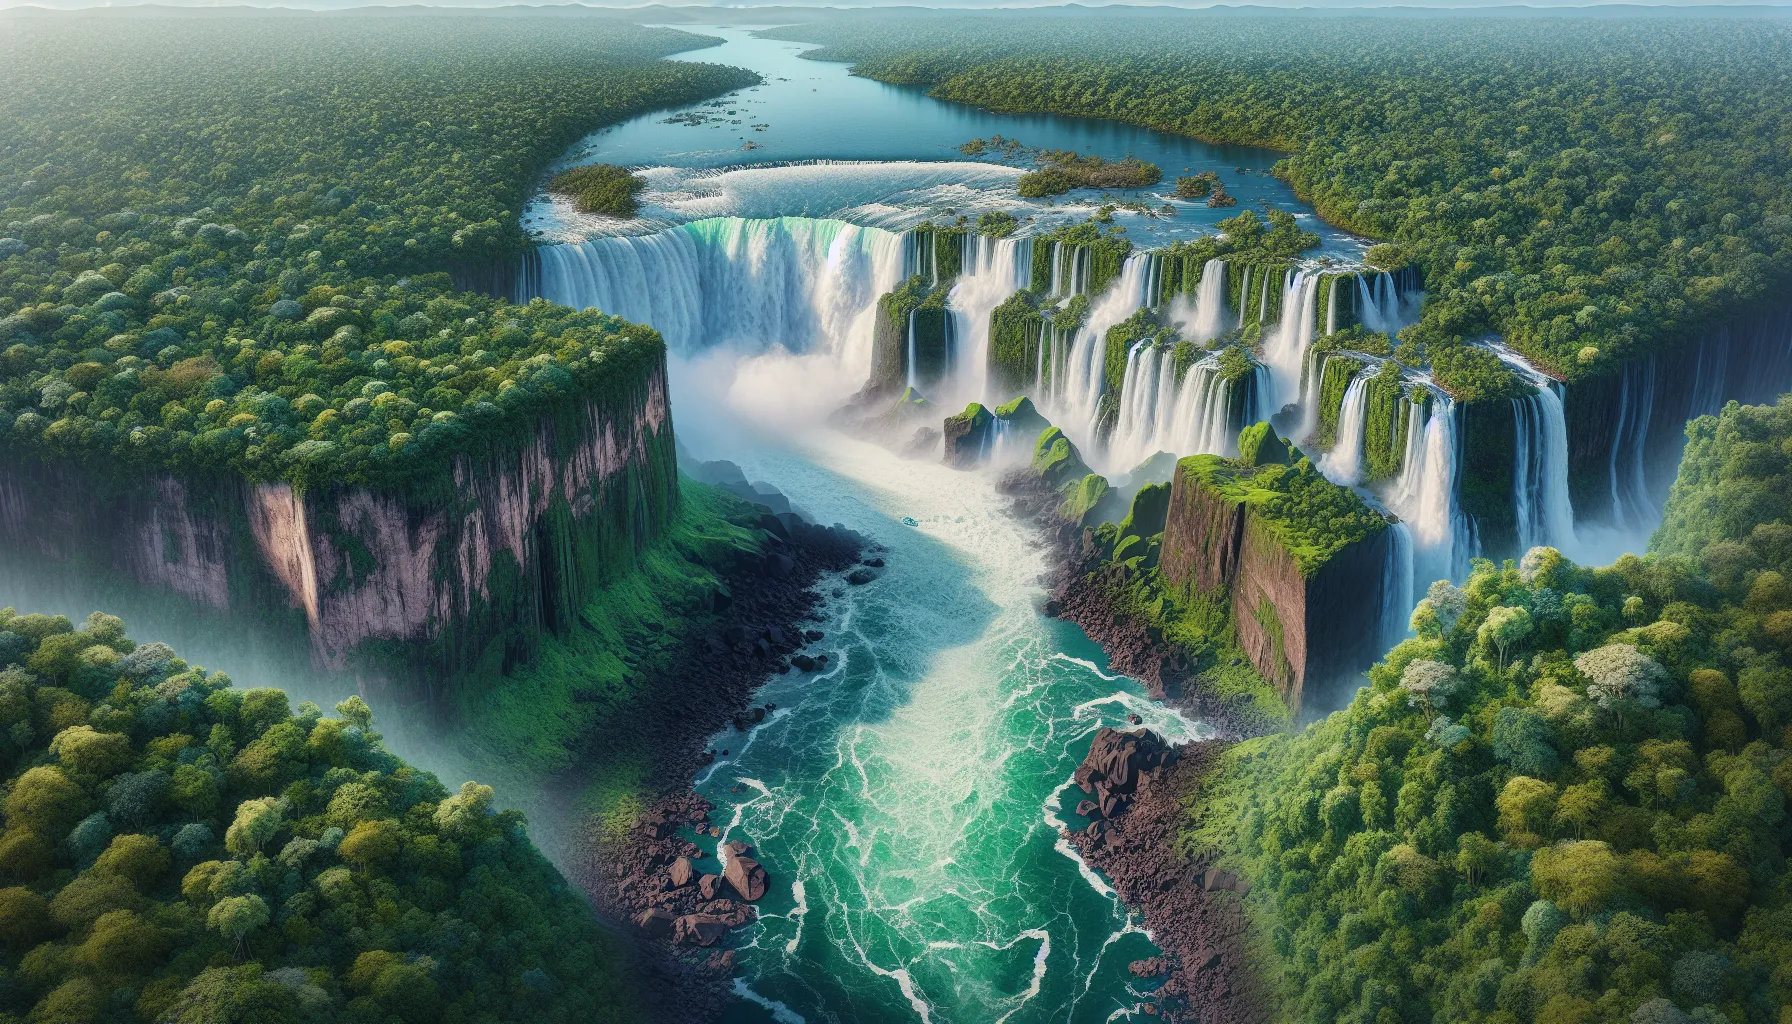 Foz do Iguaçu: Planejando Sua Visita às Cataratas 2024

Se você está planejando uma viagem para Foz do Iguaçu em 2024, não pode deixar de visitar as famosas Cataratas do Iguaçu. Localizadas na fronteira entre o Brasil e a Argentina, as Cataratas são uma das maravilhas naturais mais impressionantes do mundo.

Para começar a planejar